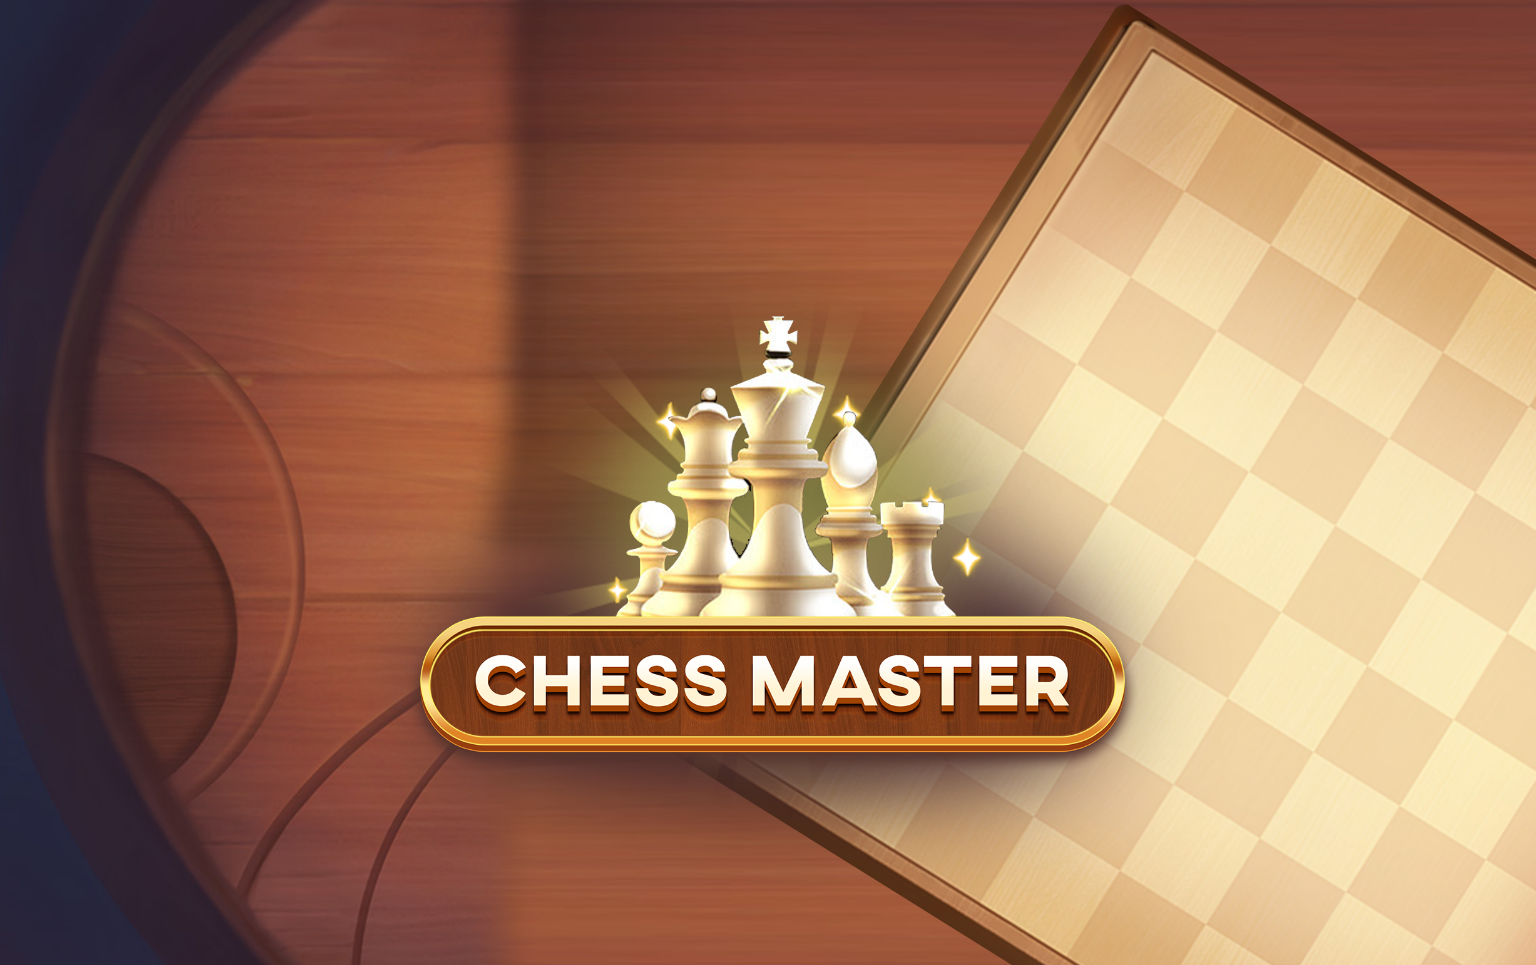 chessmaster